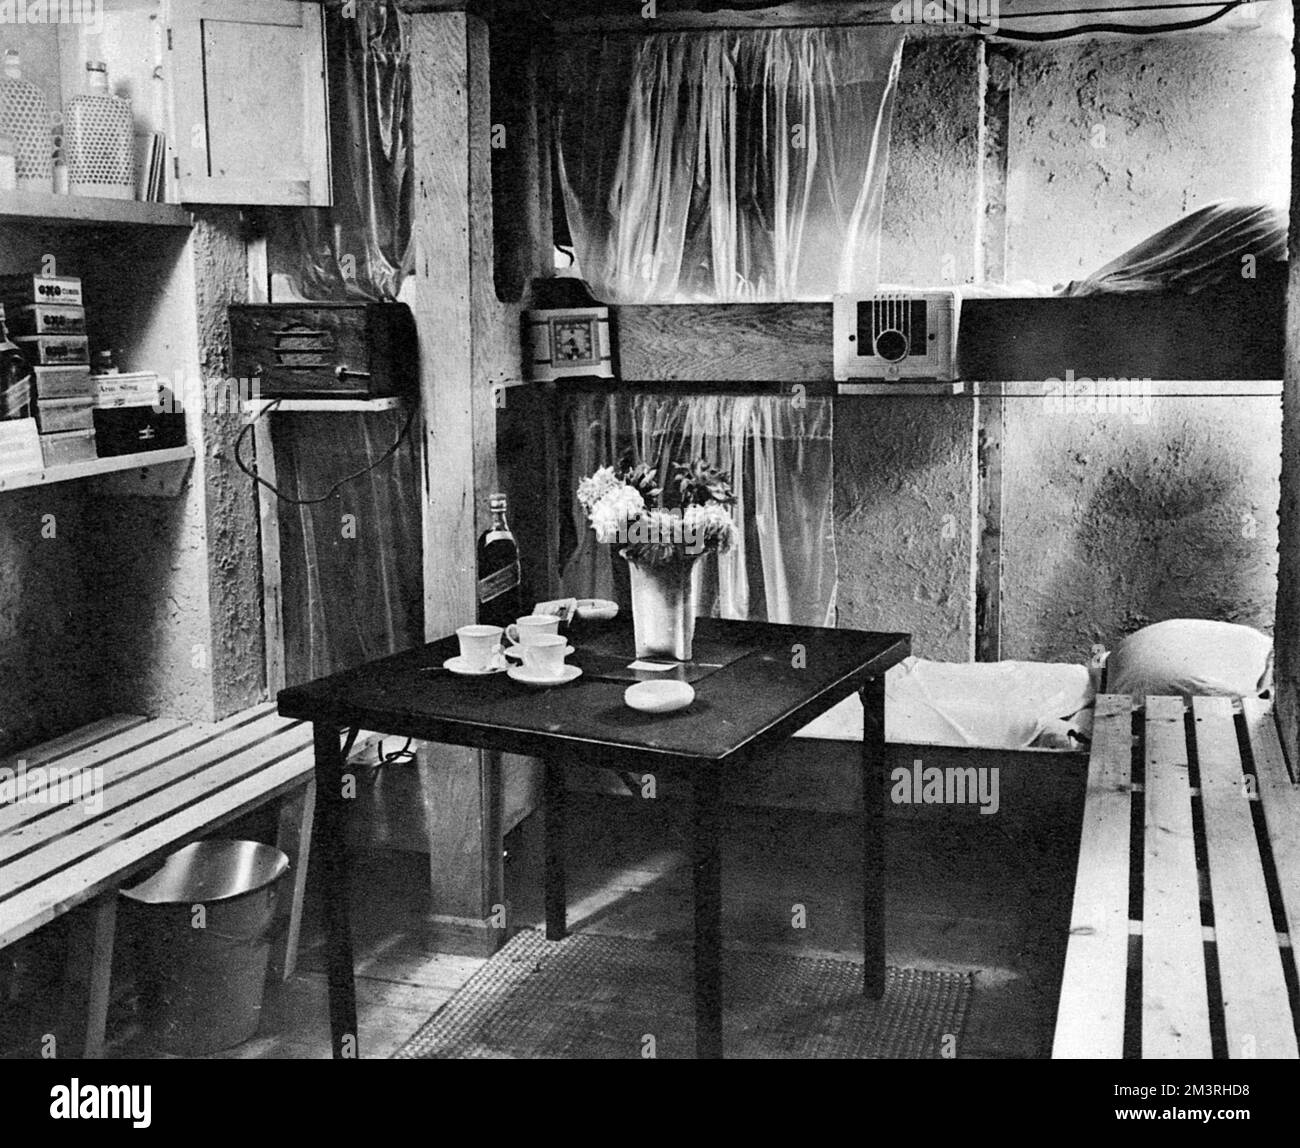 Un abri de raid aérien de luxe, équipé d'une variété de confort matériel, y compris un ensemble sans fil afin de fournir de la musique qui serait, « suing en temps de stress ». Date: 1939 Banque D'Images